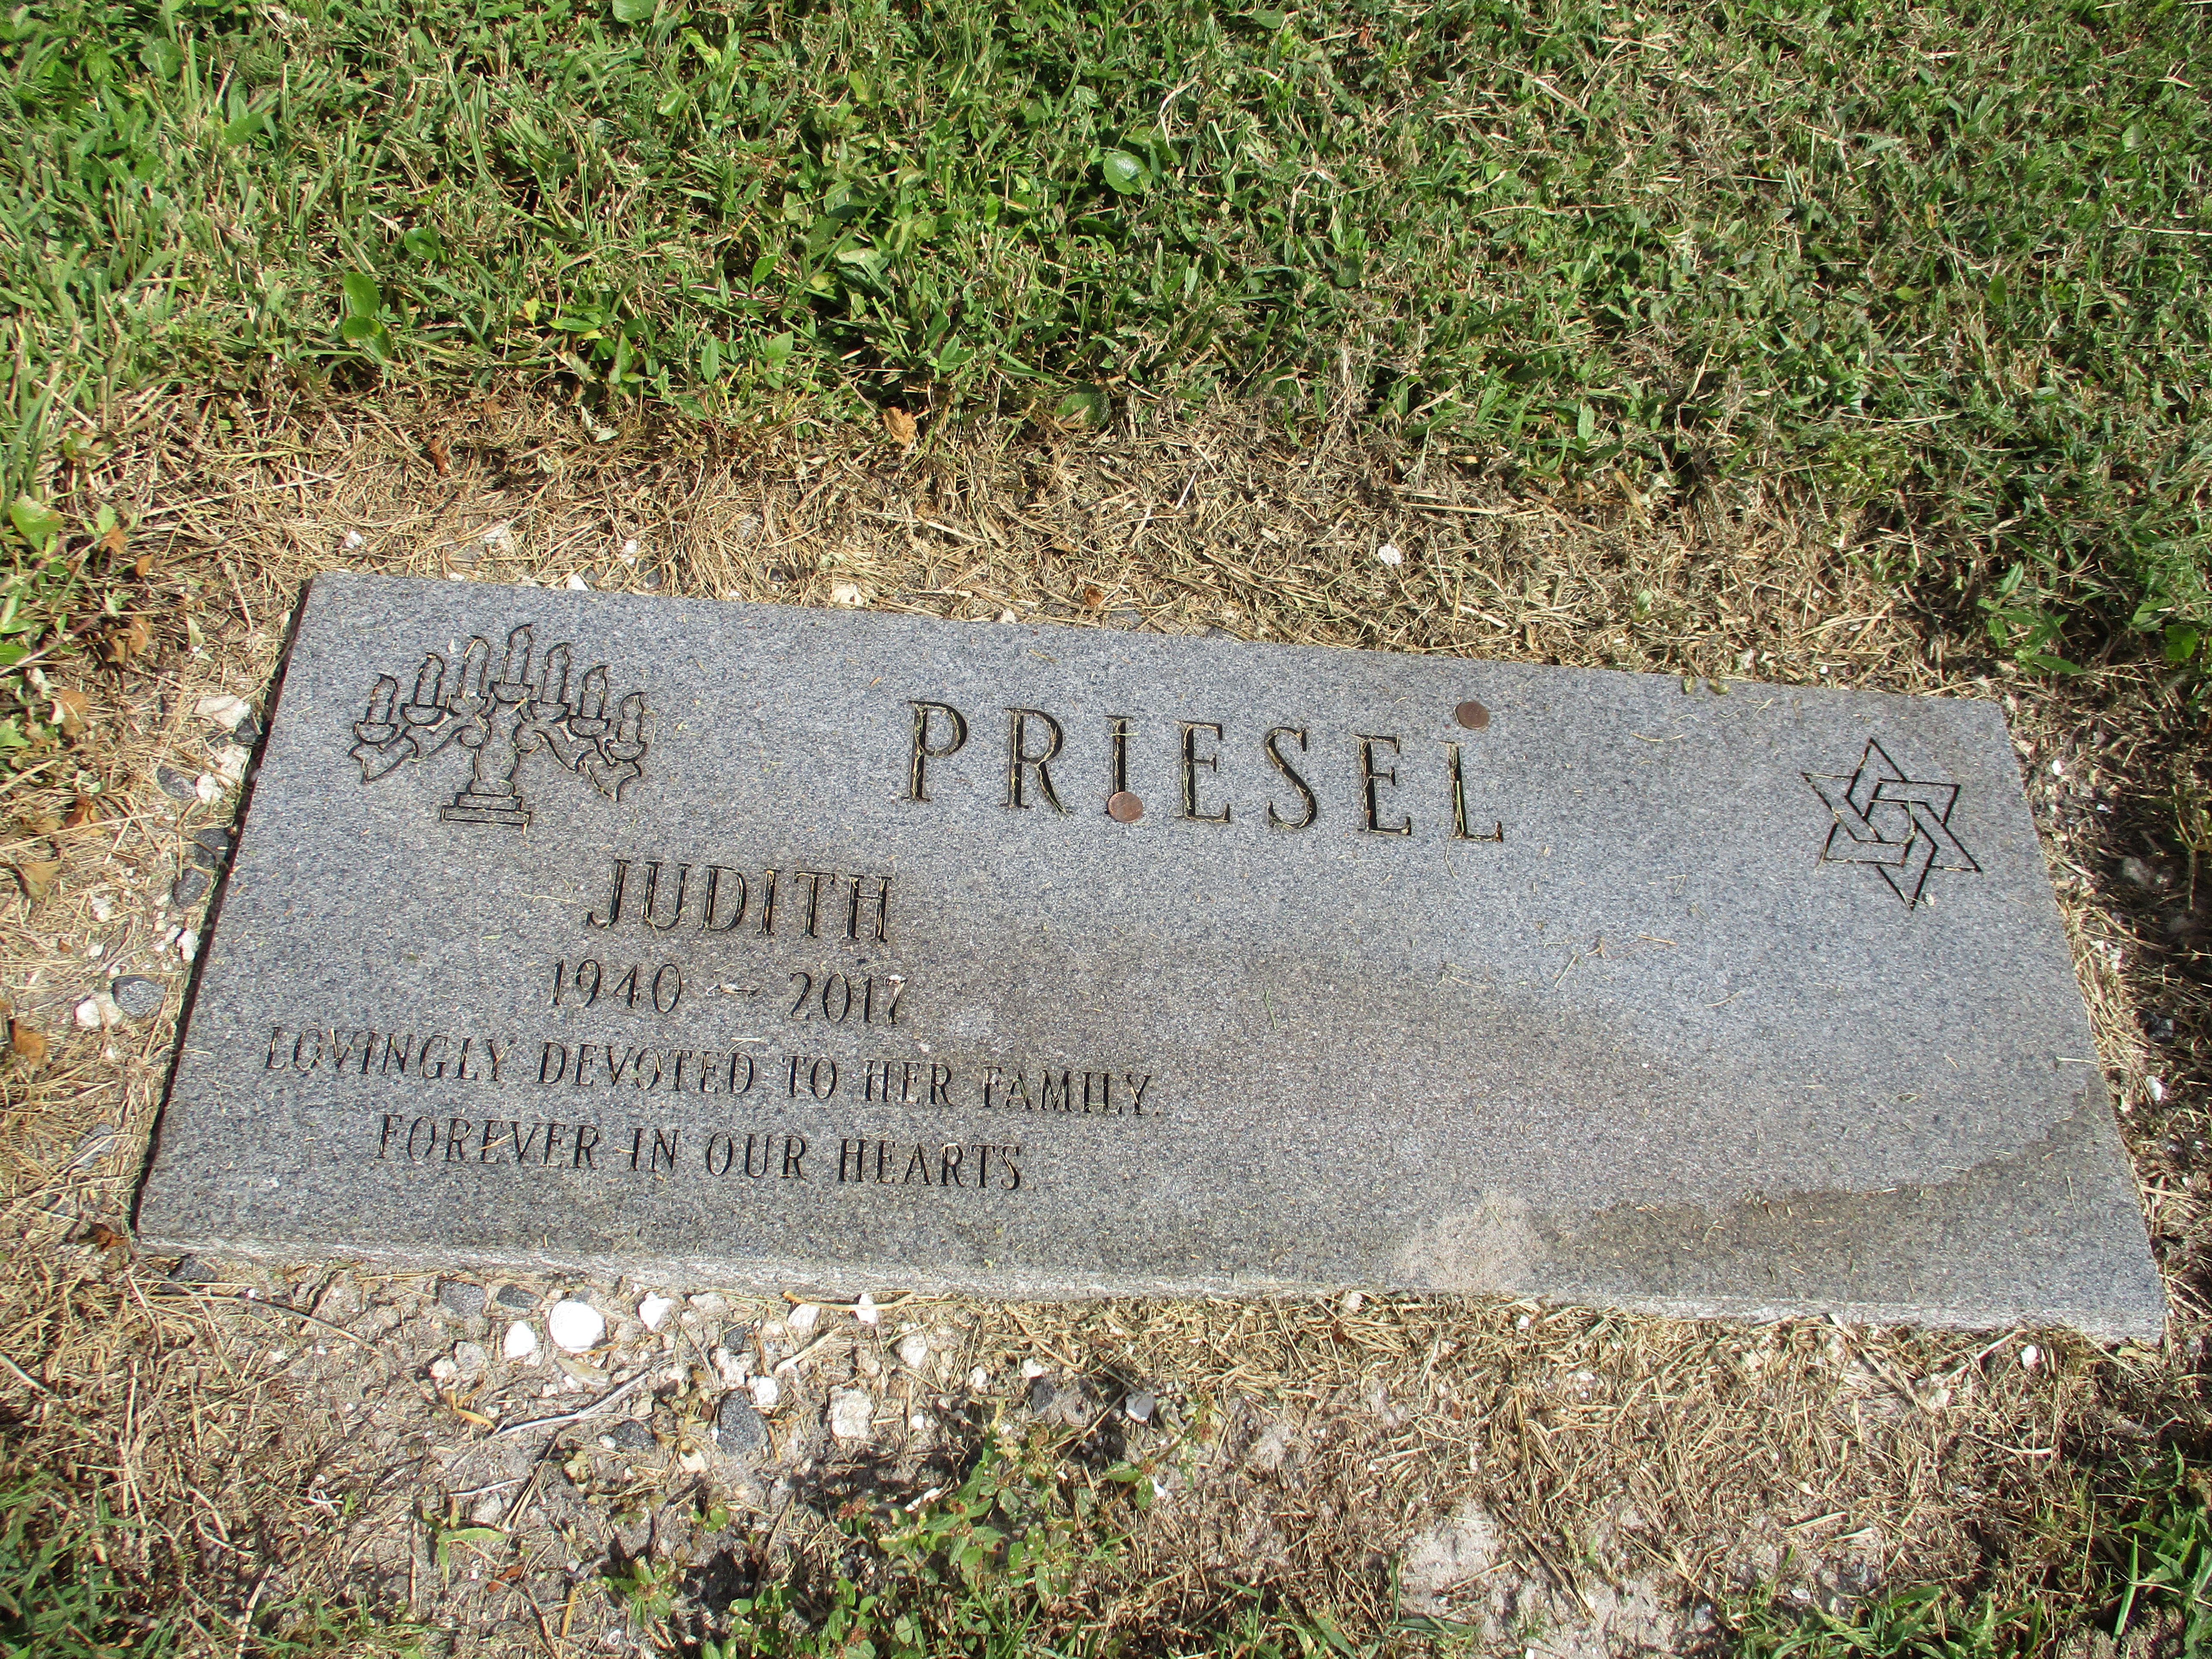 Judith Priesel